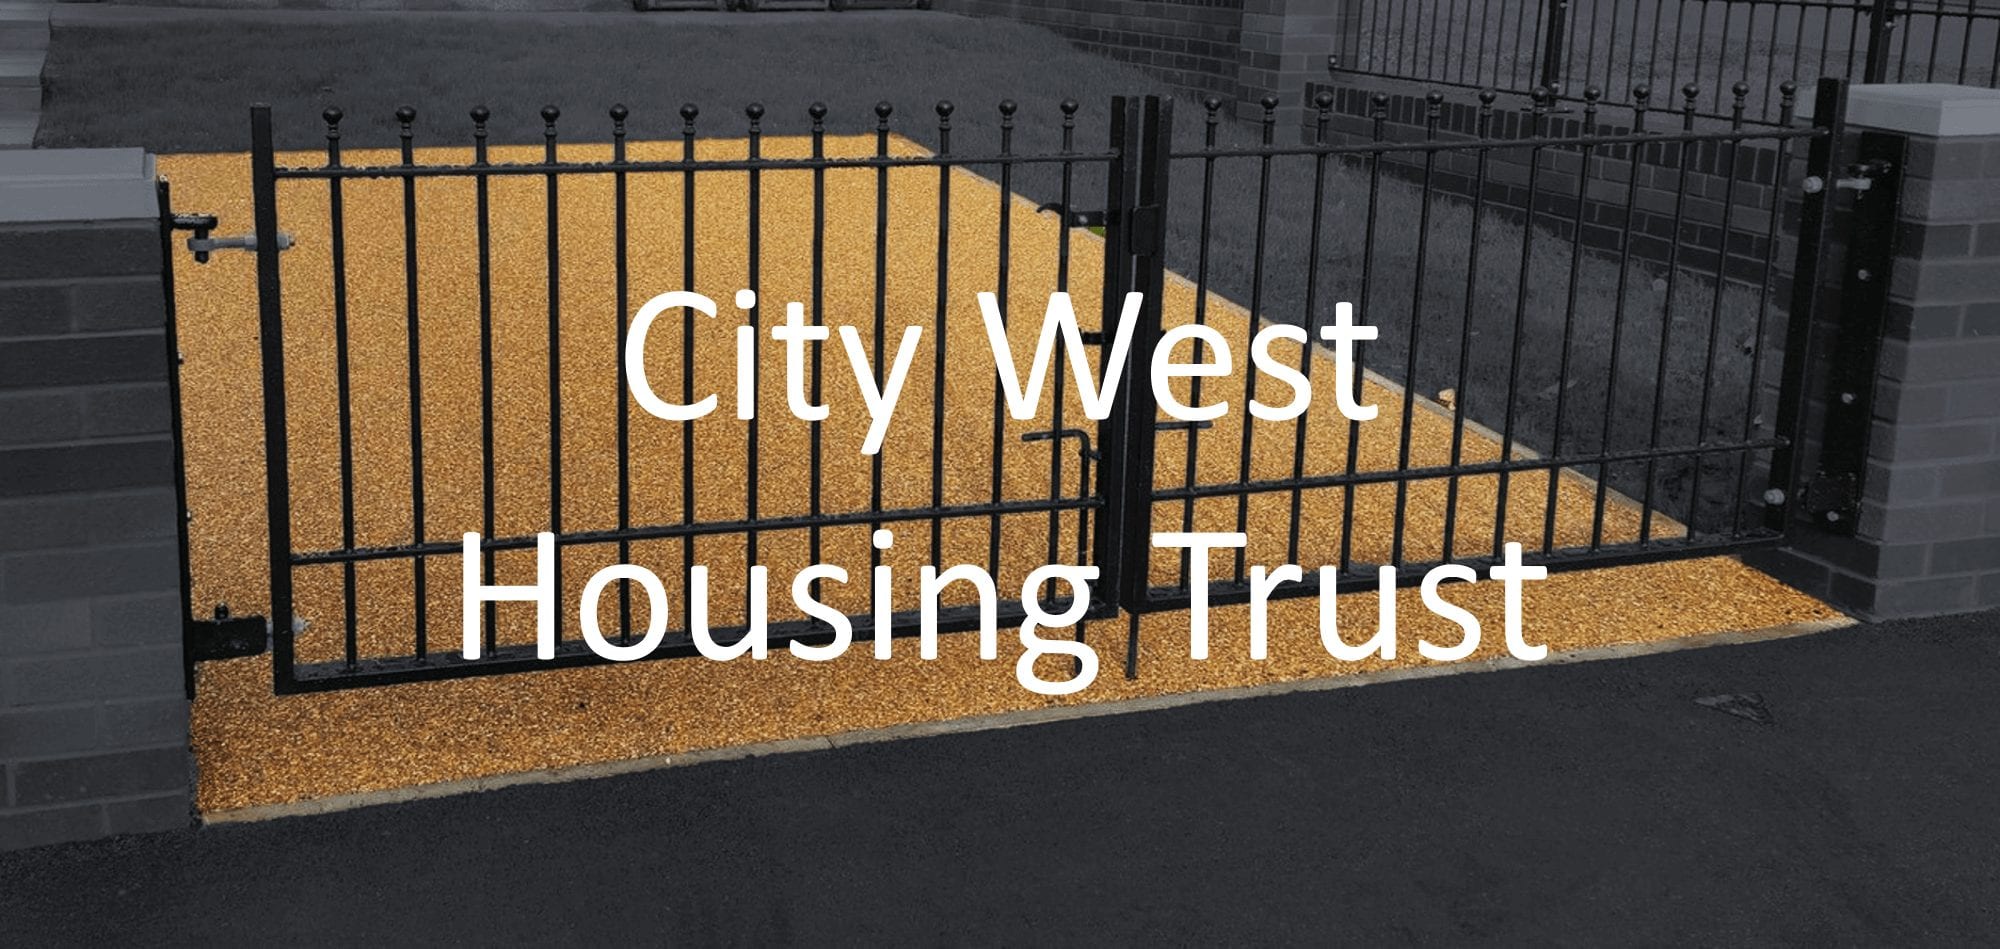 City West Housing Trust